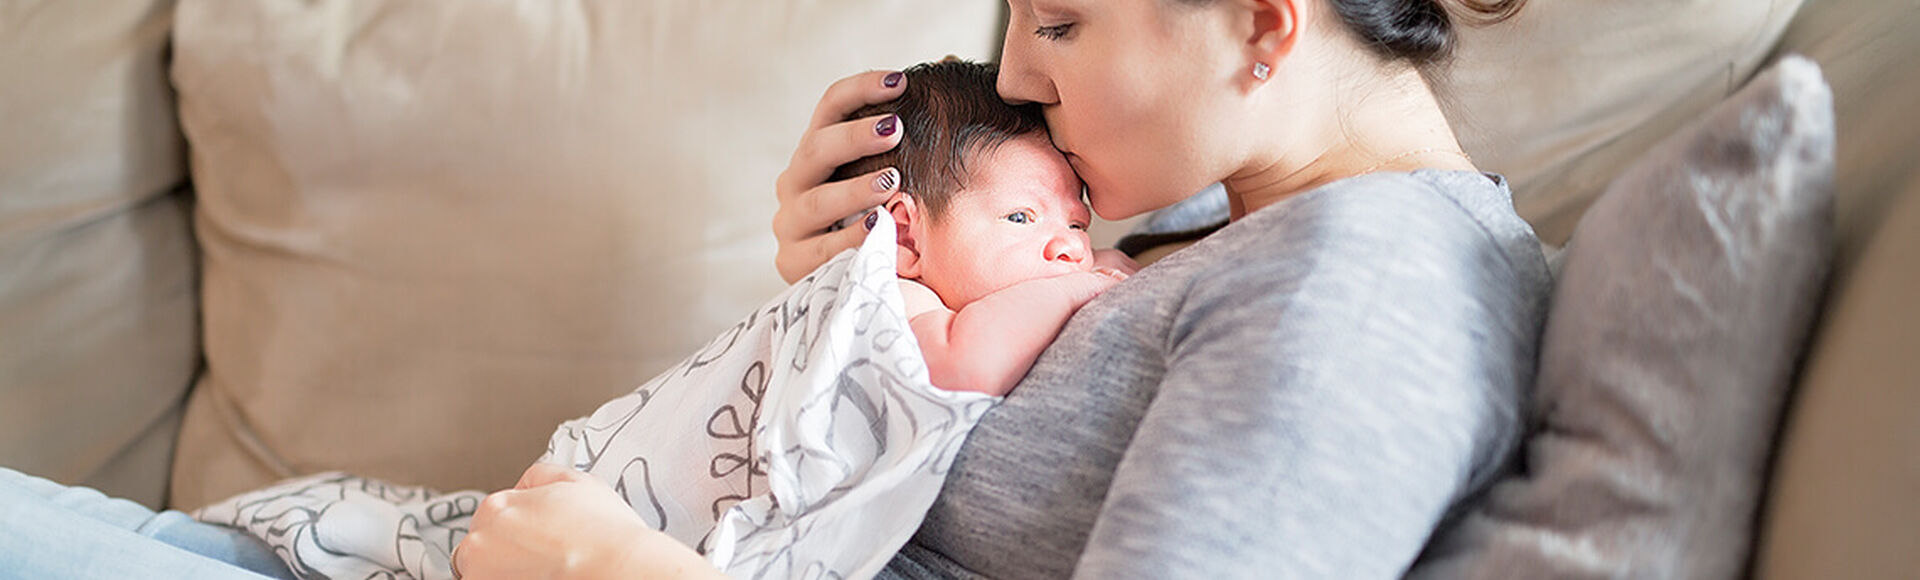 Características del parto por cesárea | Más Abrazos by Huggies